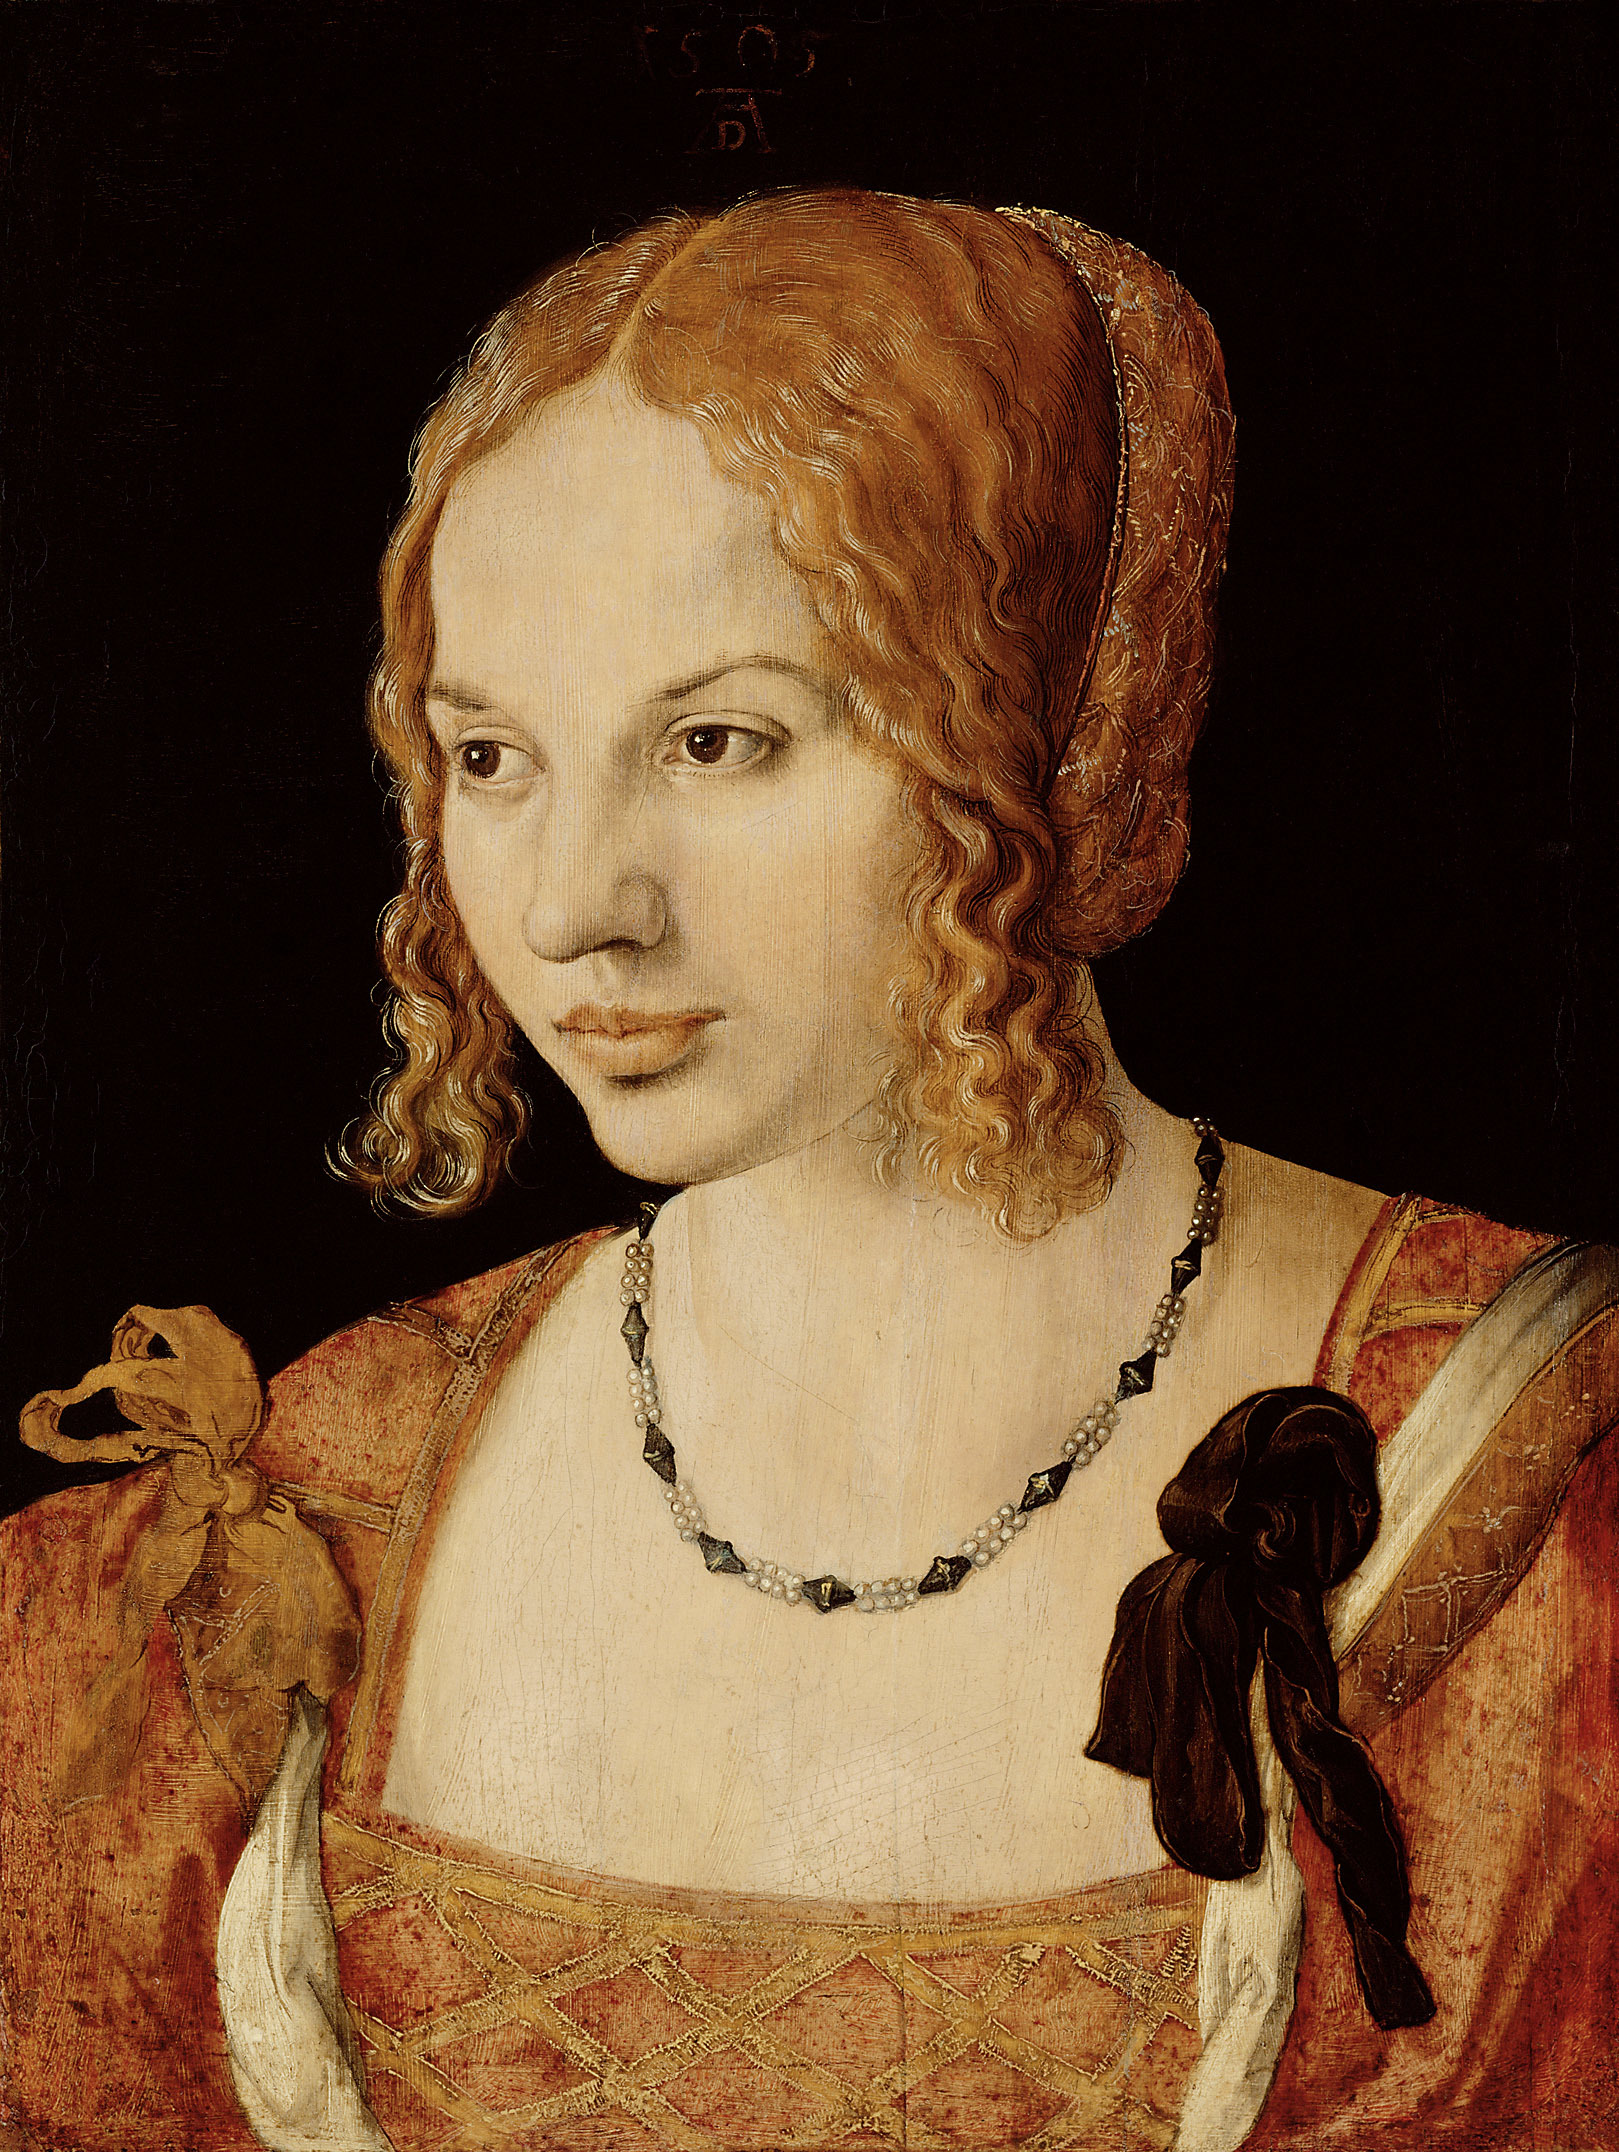 Portrait of a Young Venetian Woman by Albrecht Dürer - 1505 - 24.5 x 32.5 cm Kunsthistorisches Museum